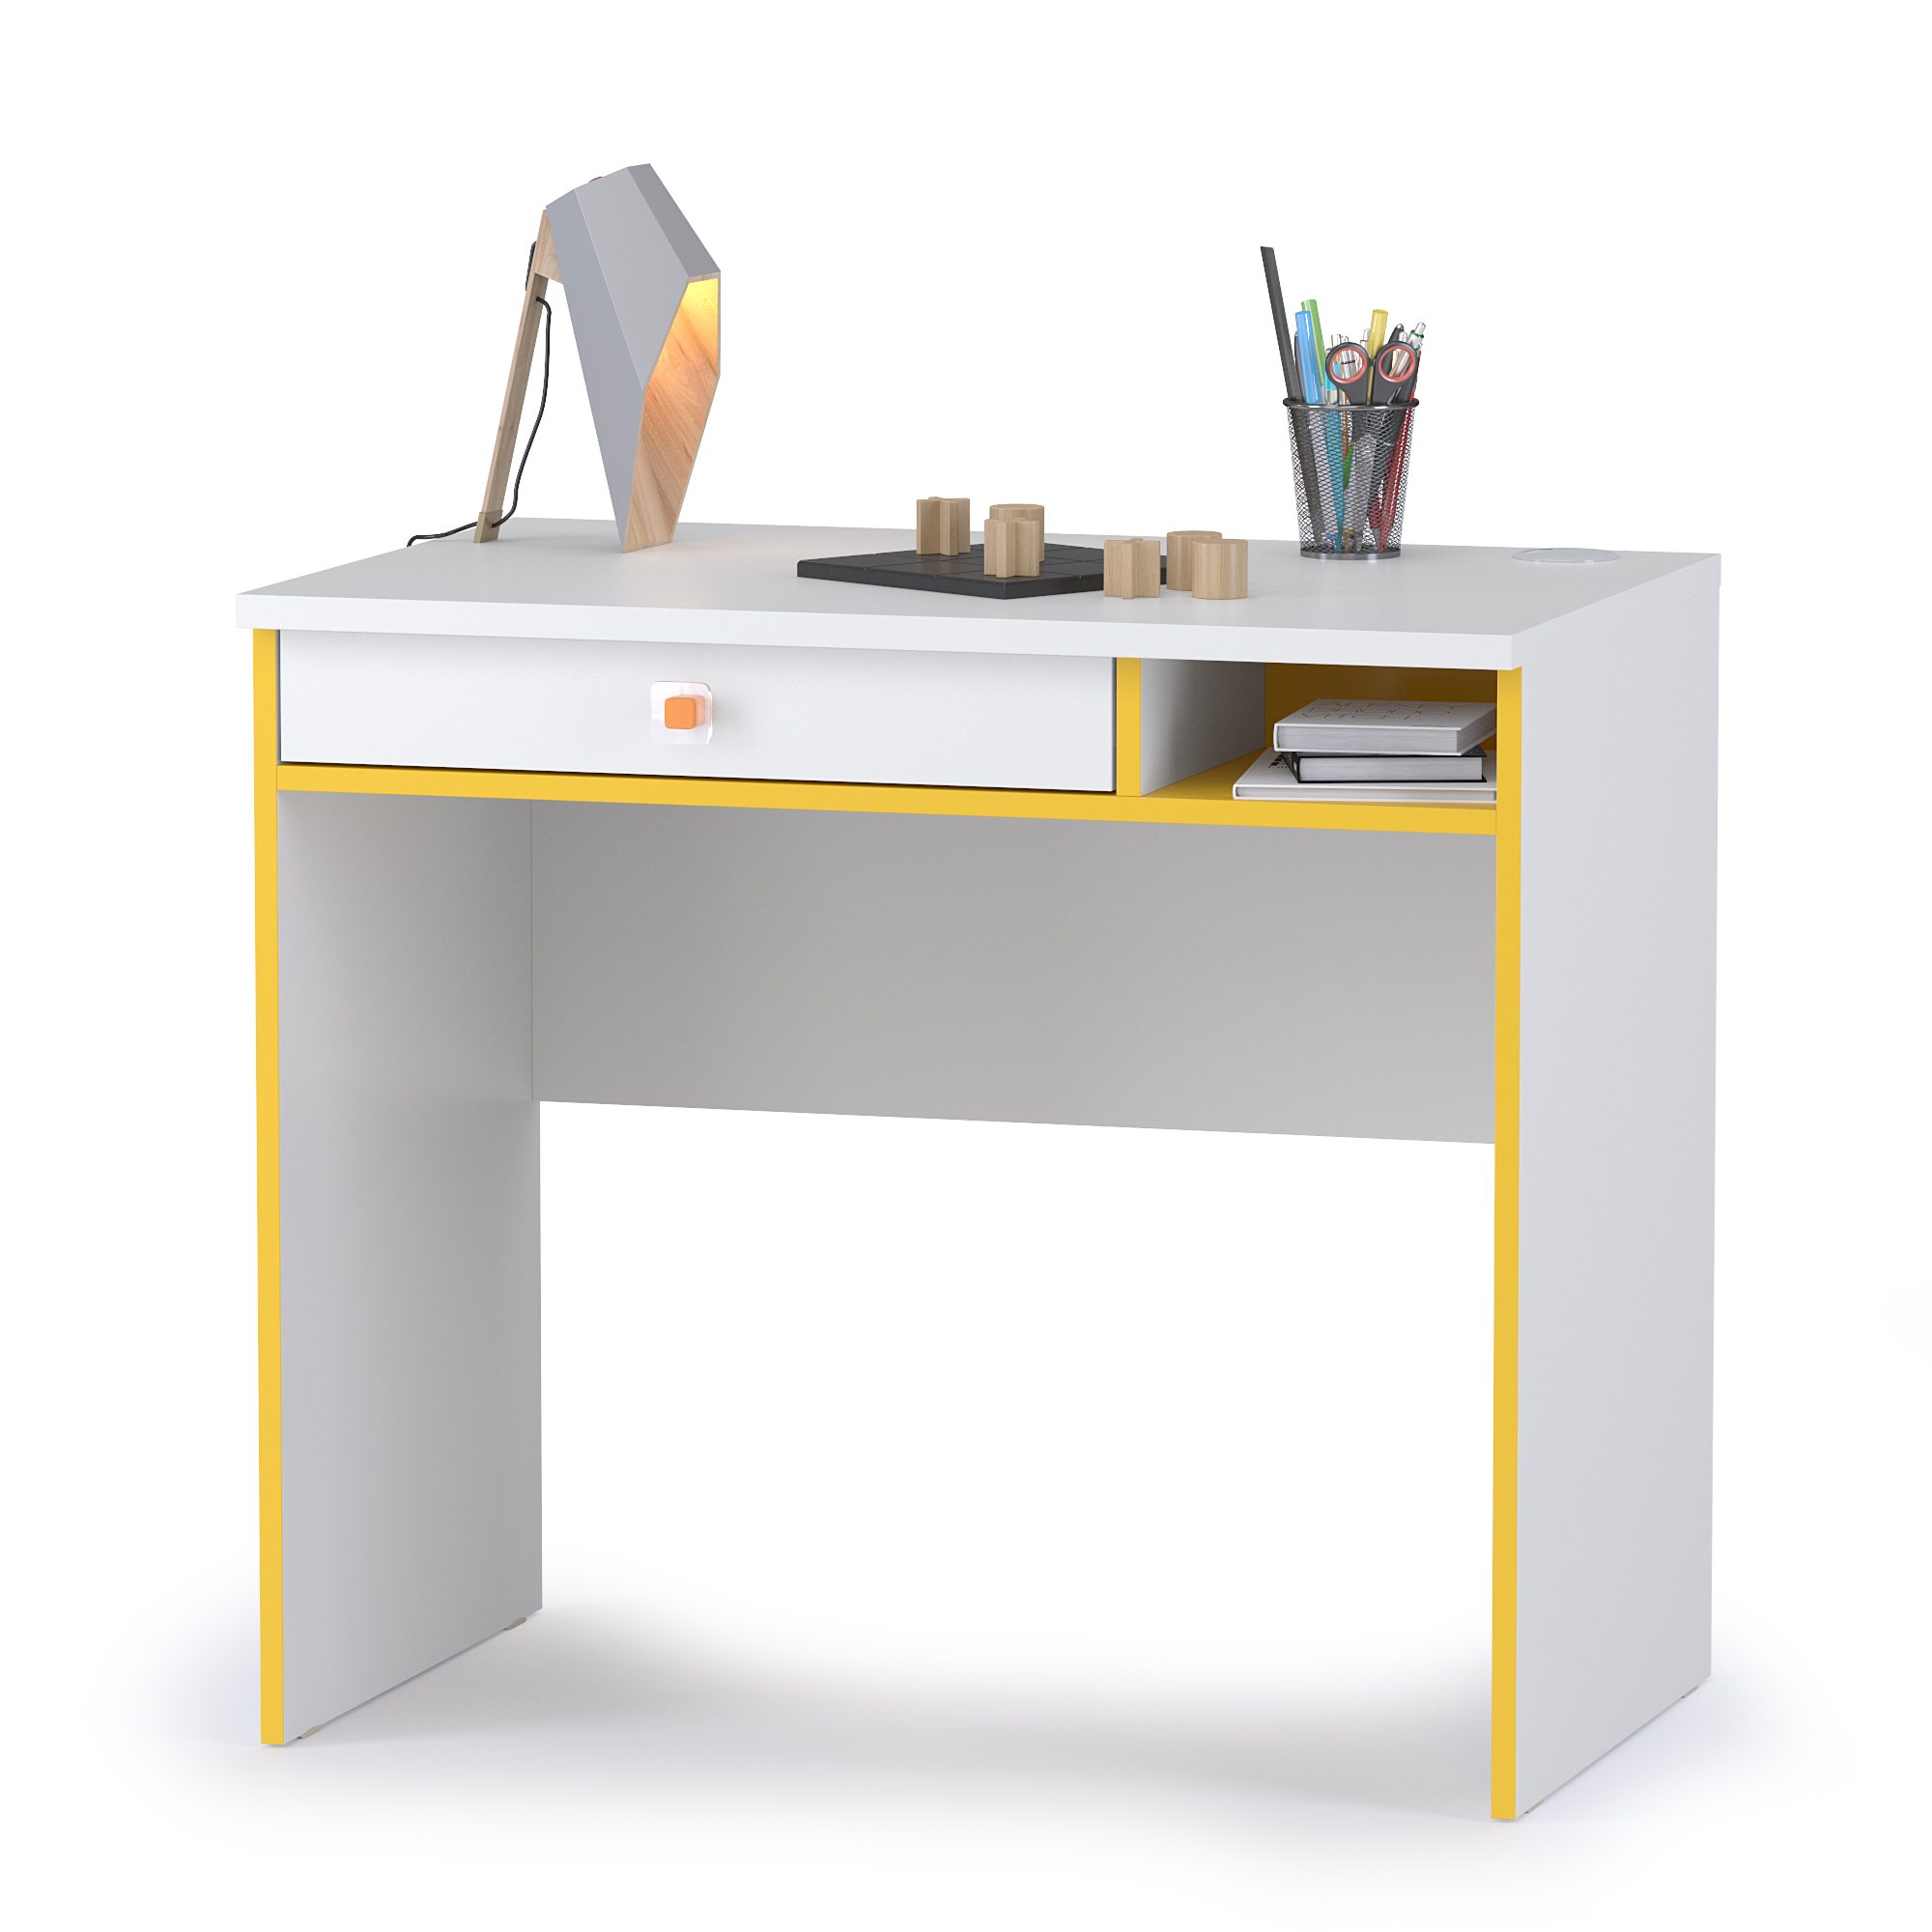 Письменный стол Mobi Альфа 12.41 солнечный свет/белый премиум, 85х55х76 см,  - купить со скидкой